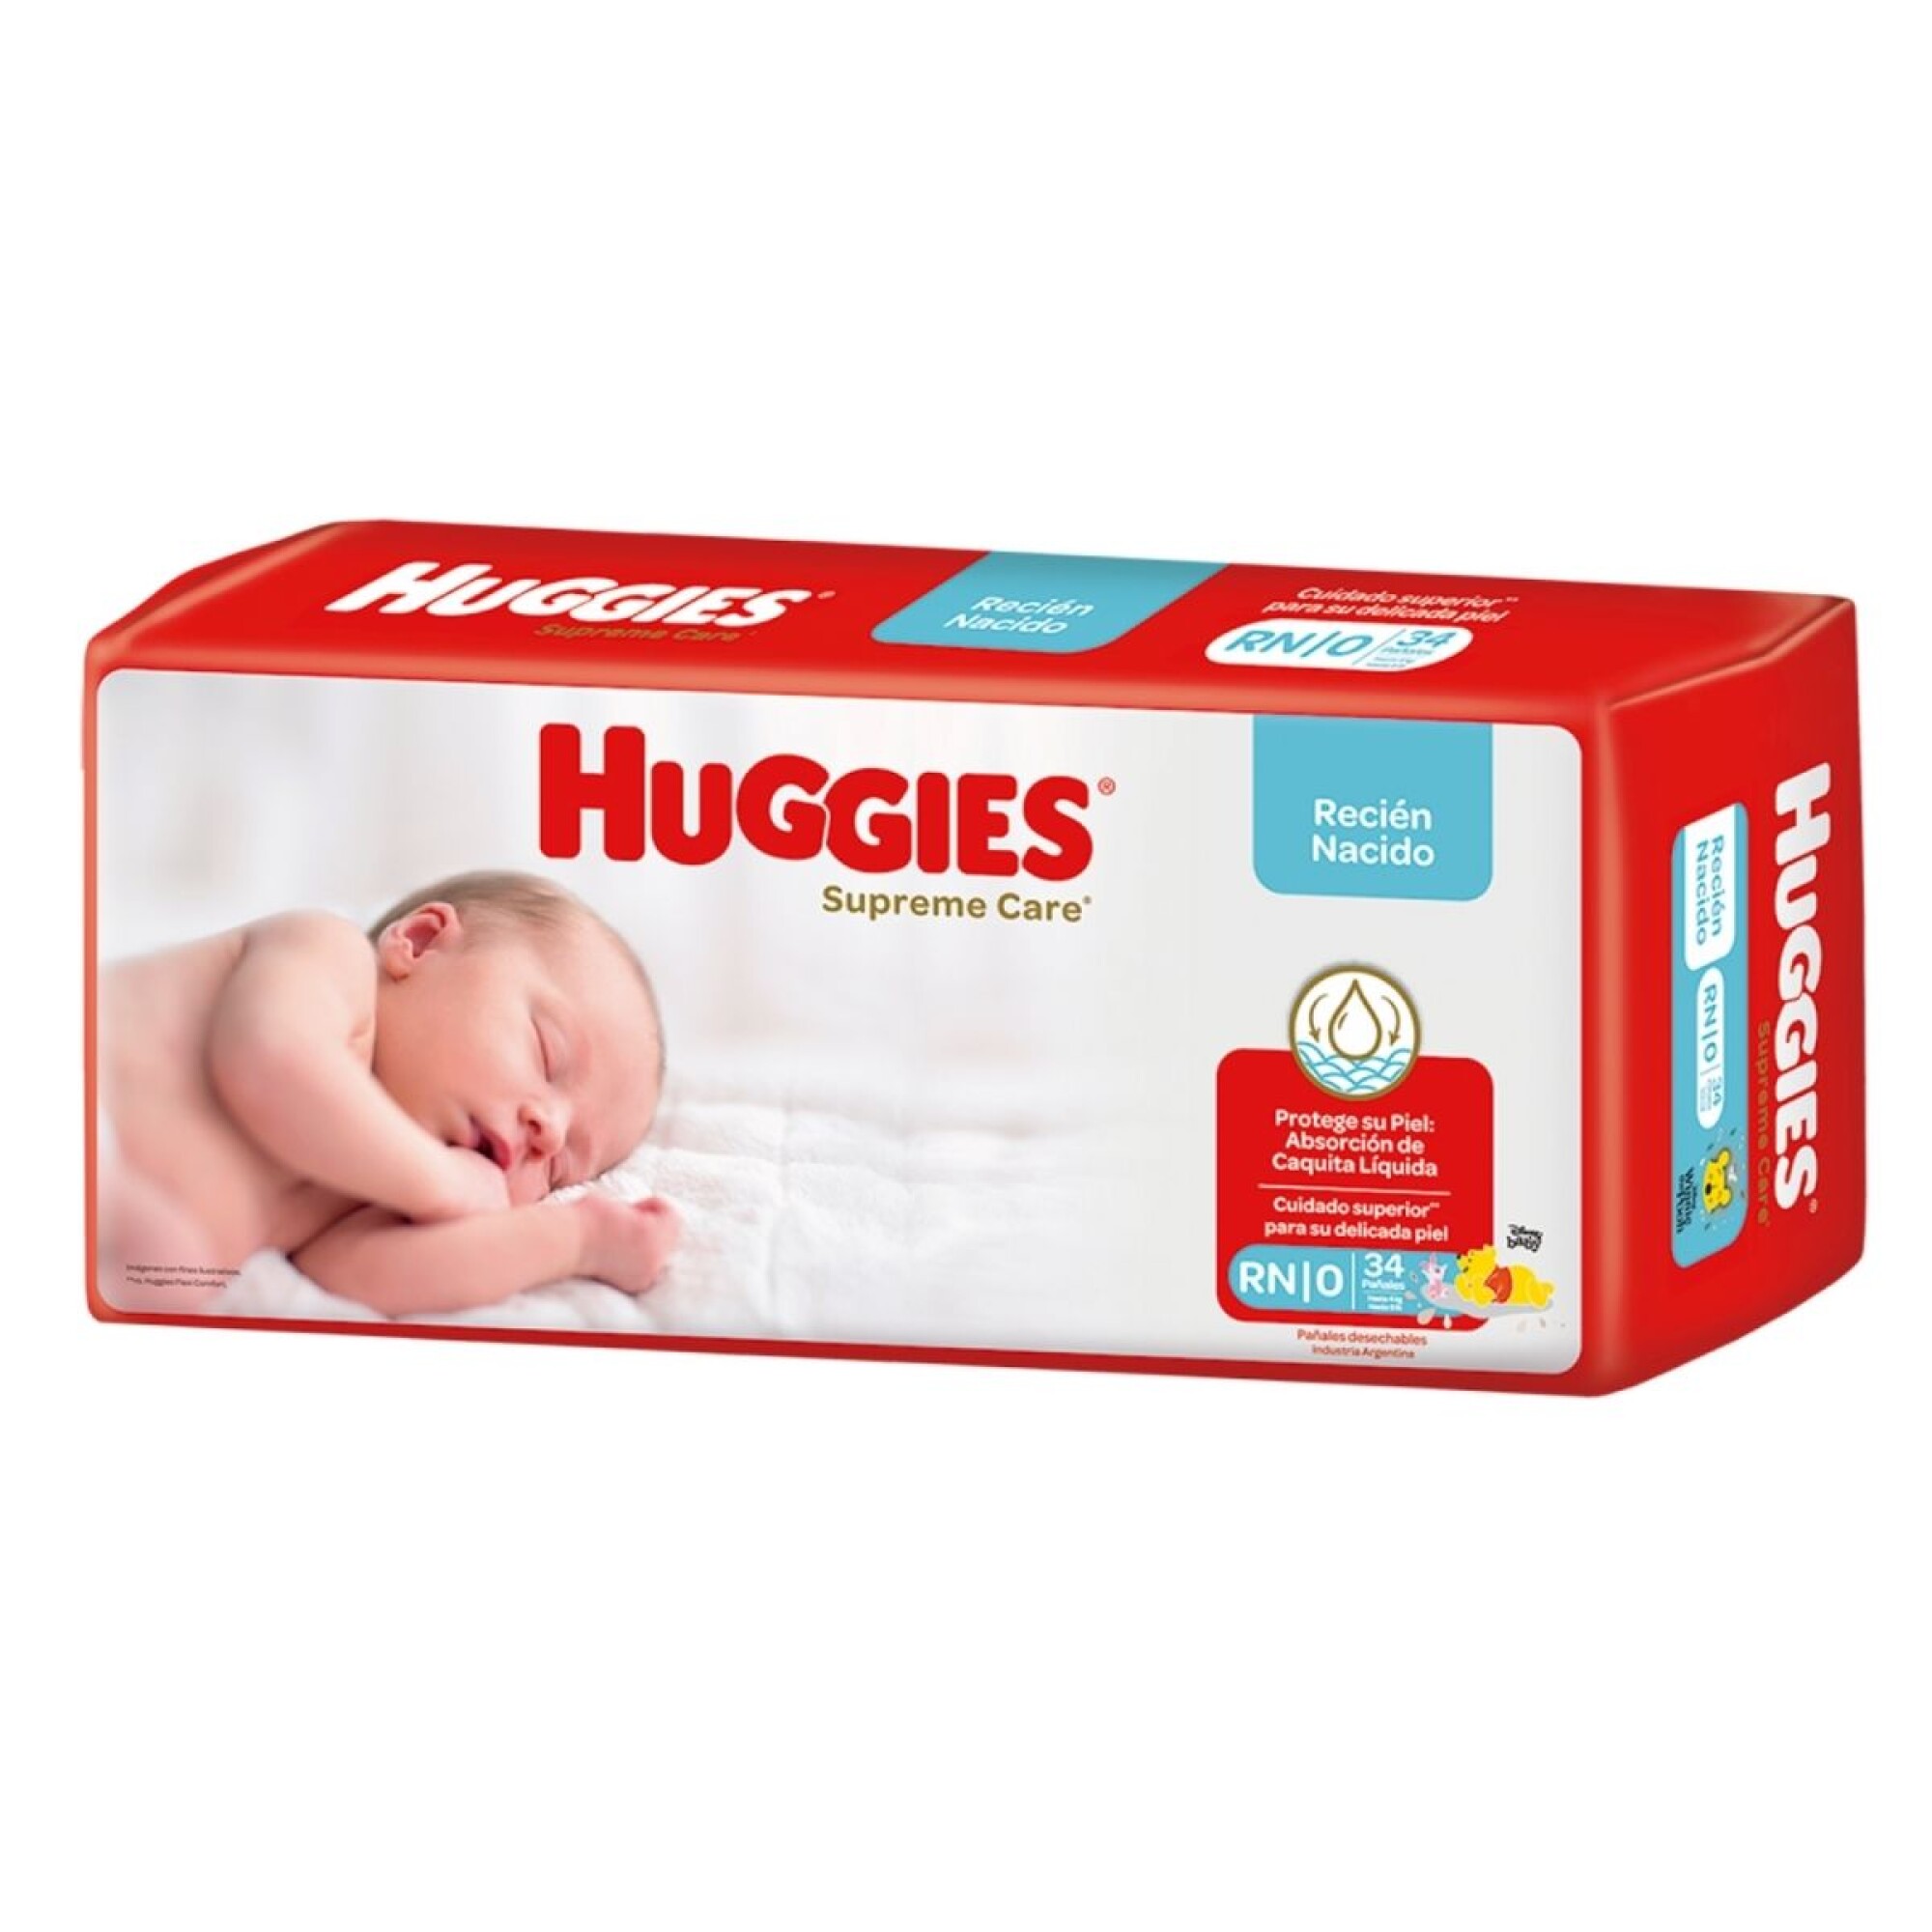 Pañales Pure & Natural Etapa RN marca Huggies Supreme para Bebé